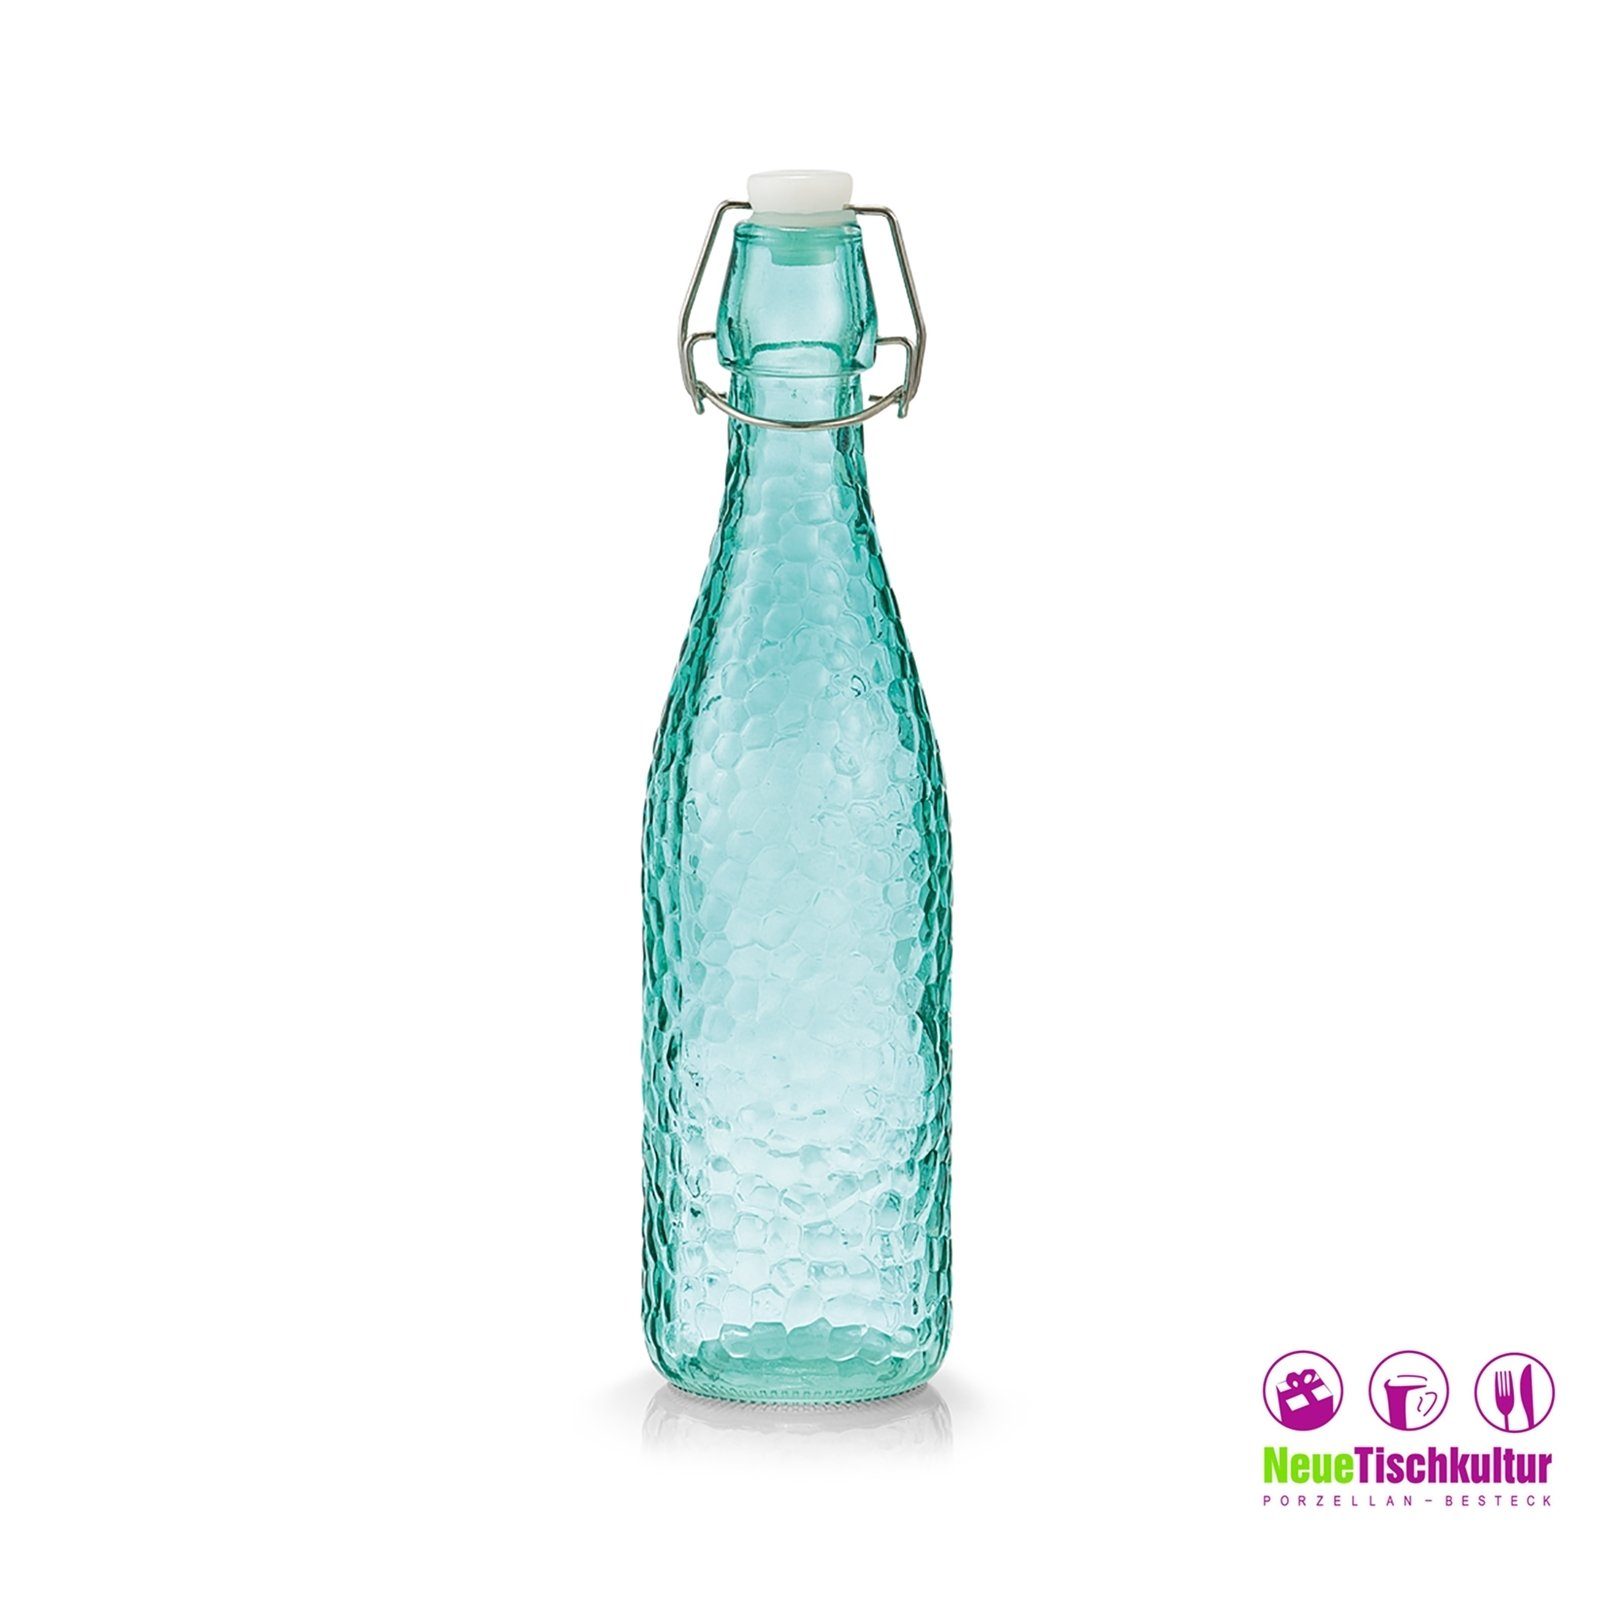 Vorratsglas Bügelverschluss Aqua, mit Glasflasche Glas Neuetischkultur